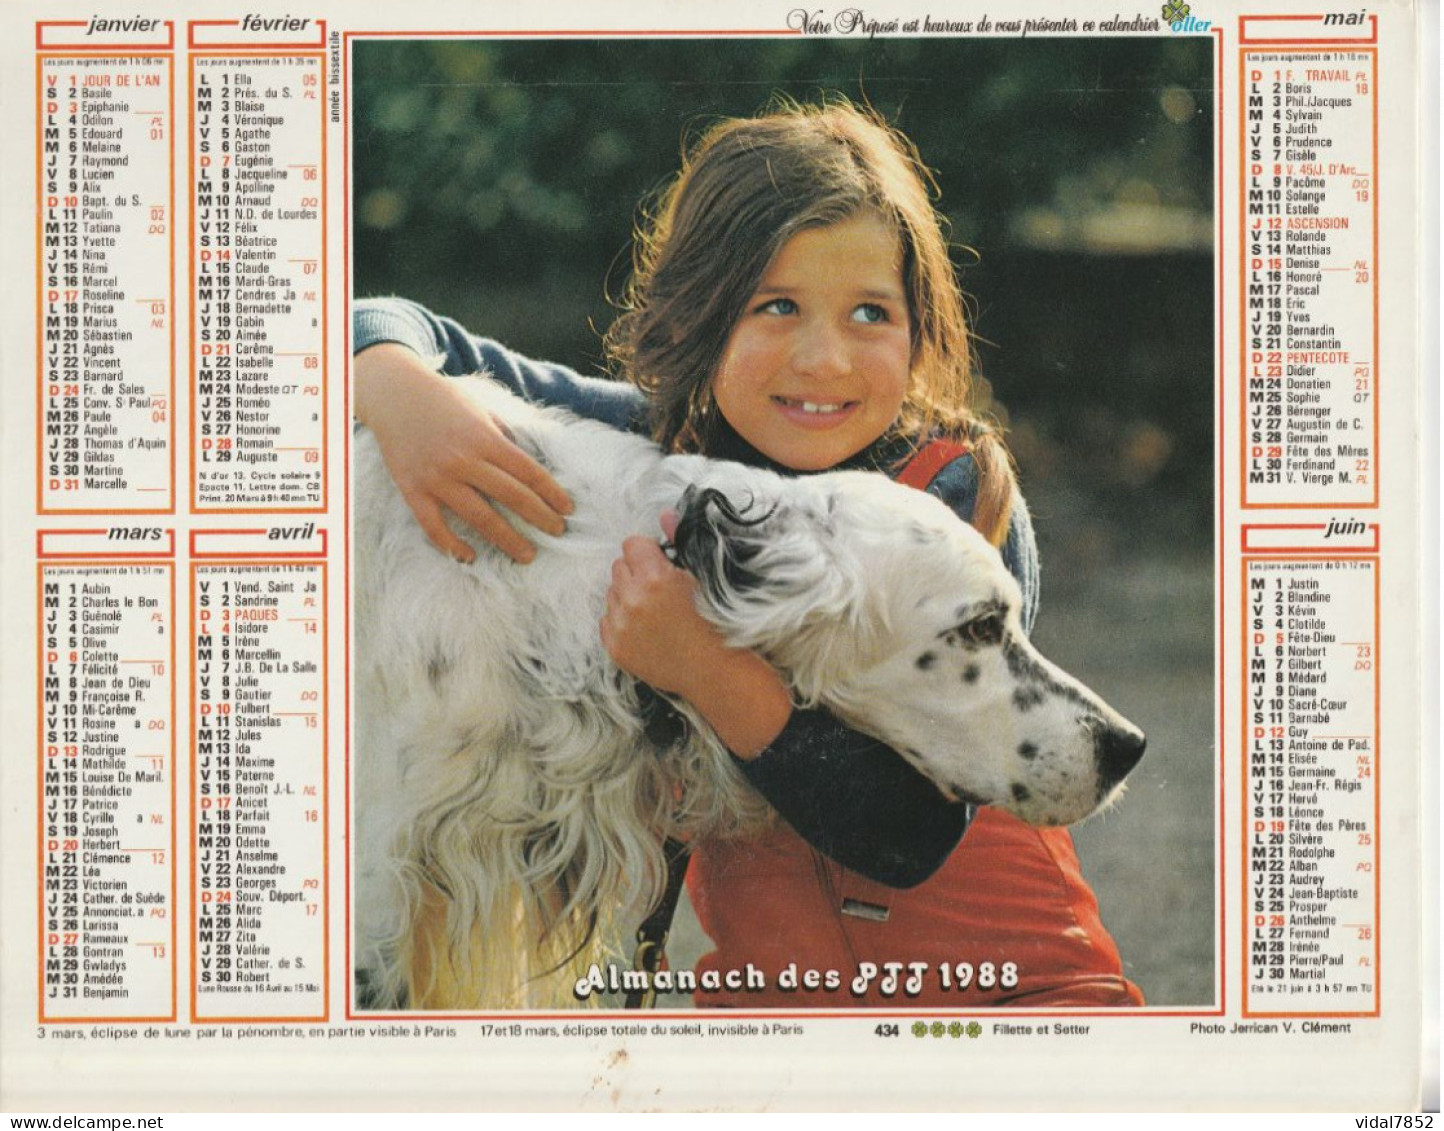 Calendrier-Almanach Des P.T.T 1988-Poster Intérieur JEAN JACQUES GOLDMAN -OLLER Département AIN-01-Référence 440 - Grand Format : 1981-90